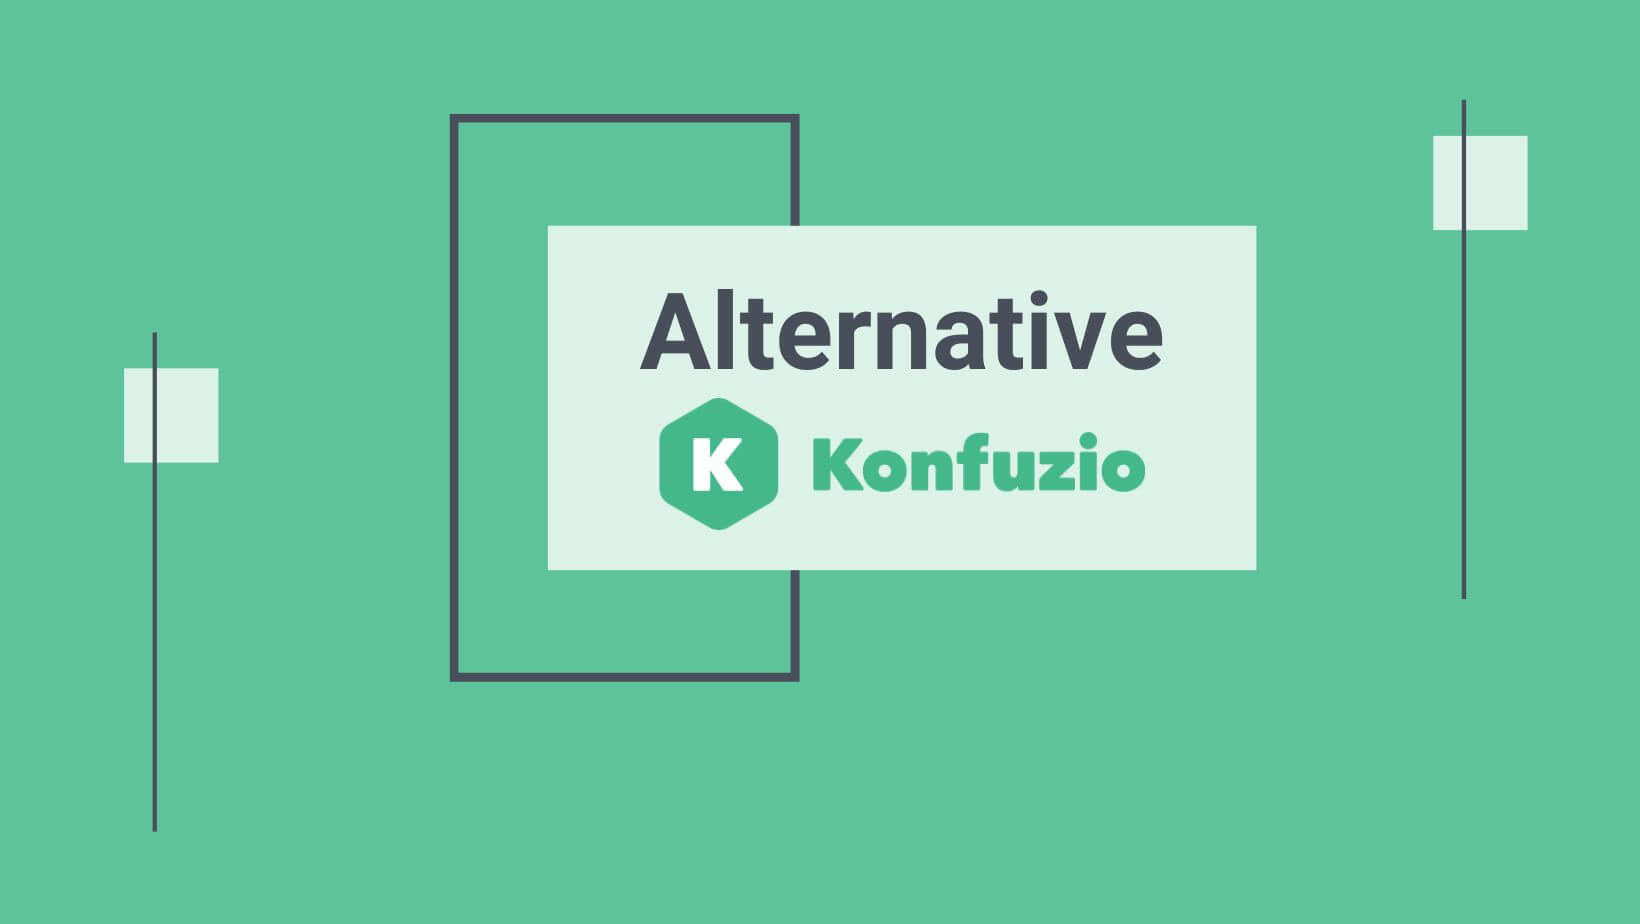 Konfuzio Logo auf grünem Hintergrund, Alternative